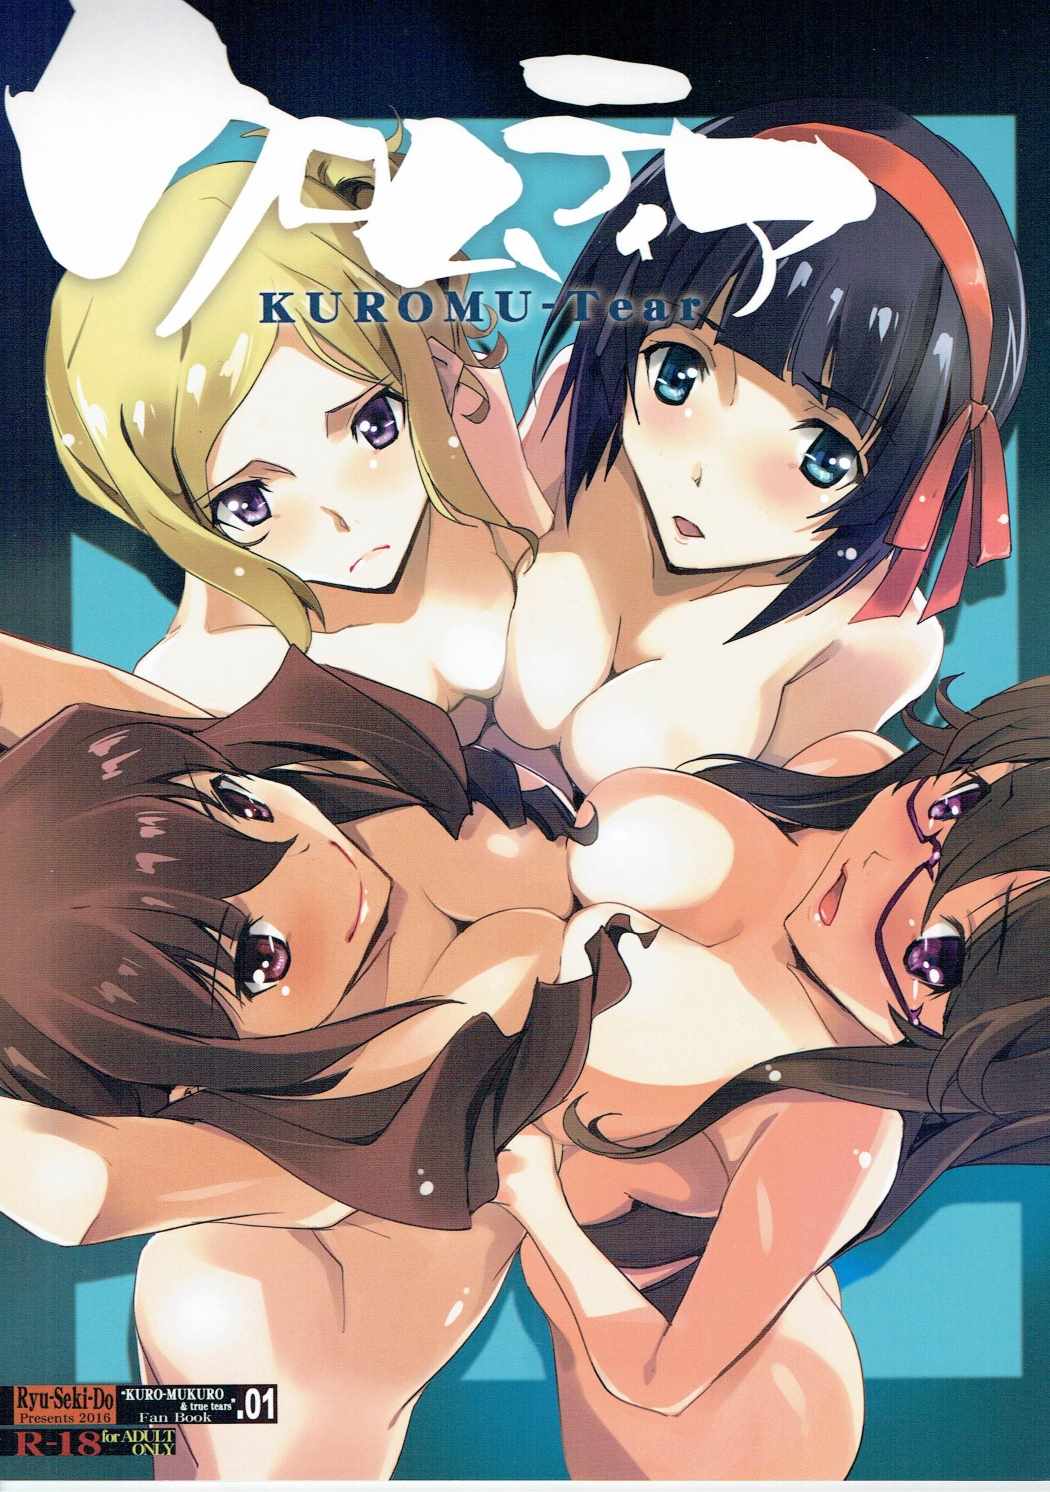 Ladies Naked Arsch Kuromukuro Porn Pix